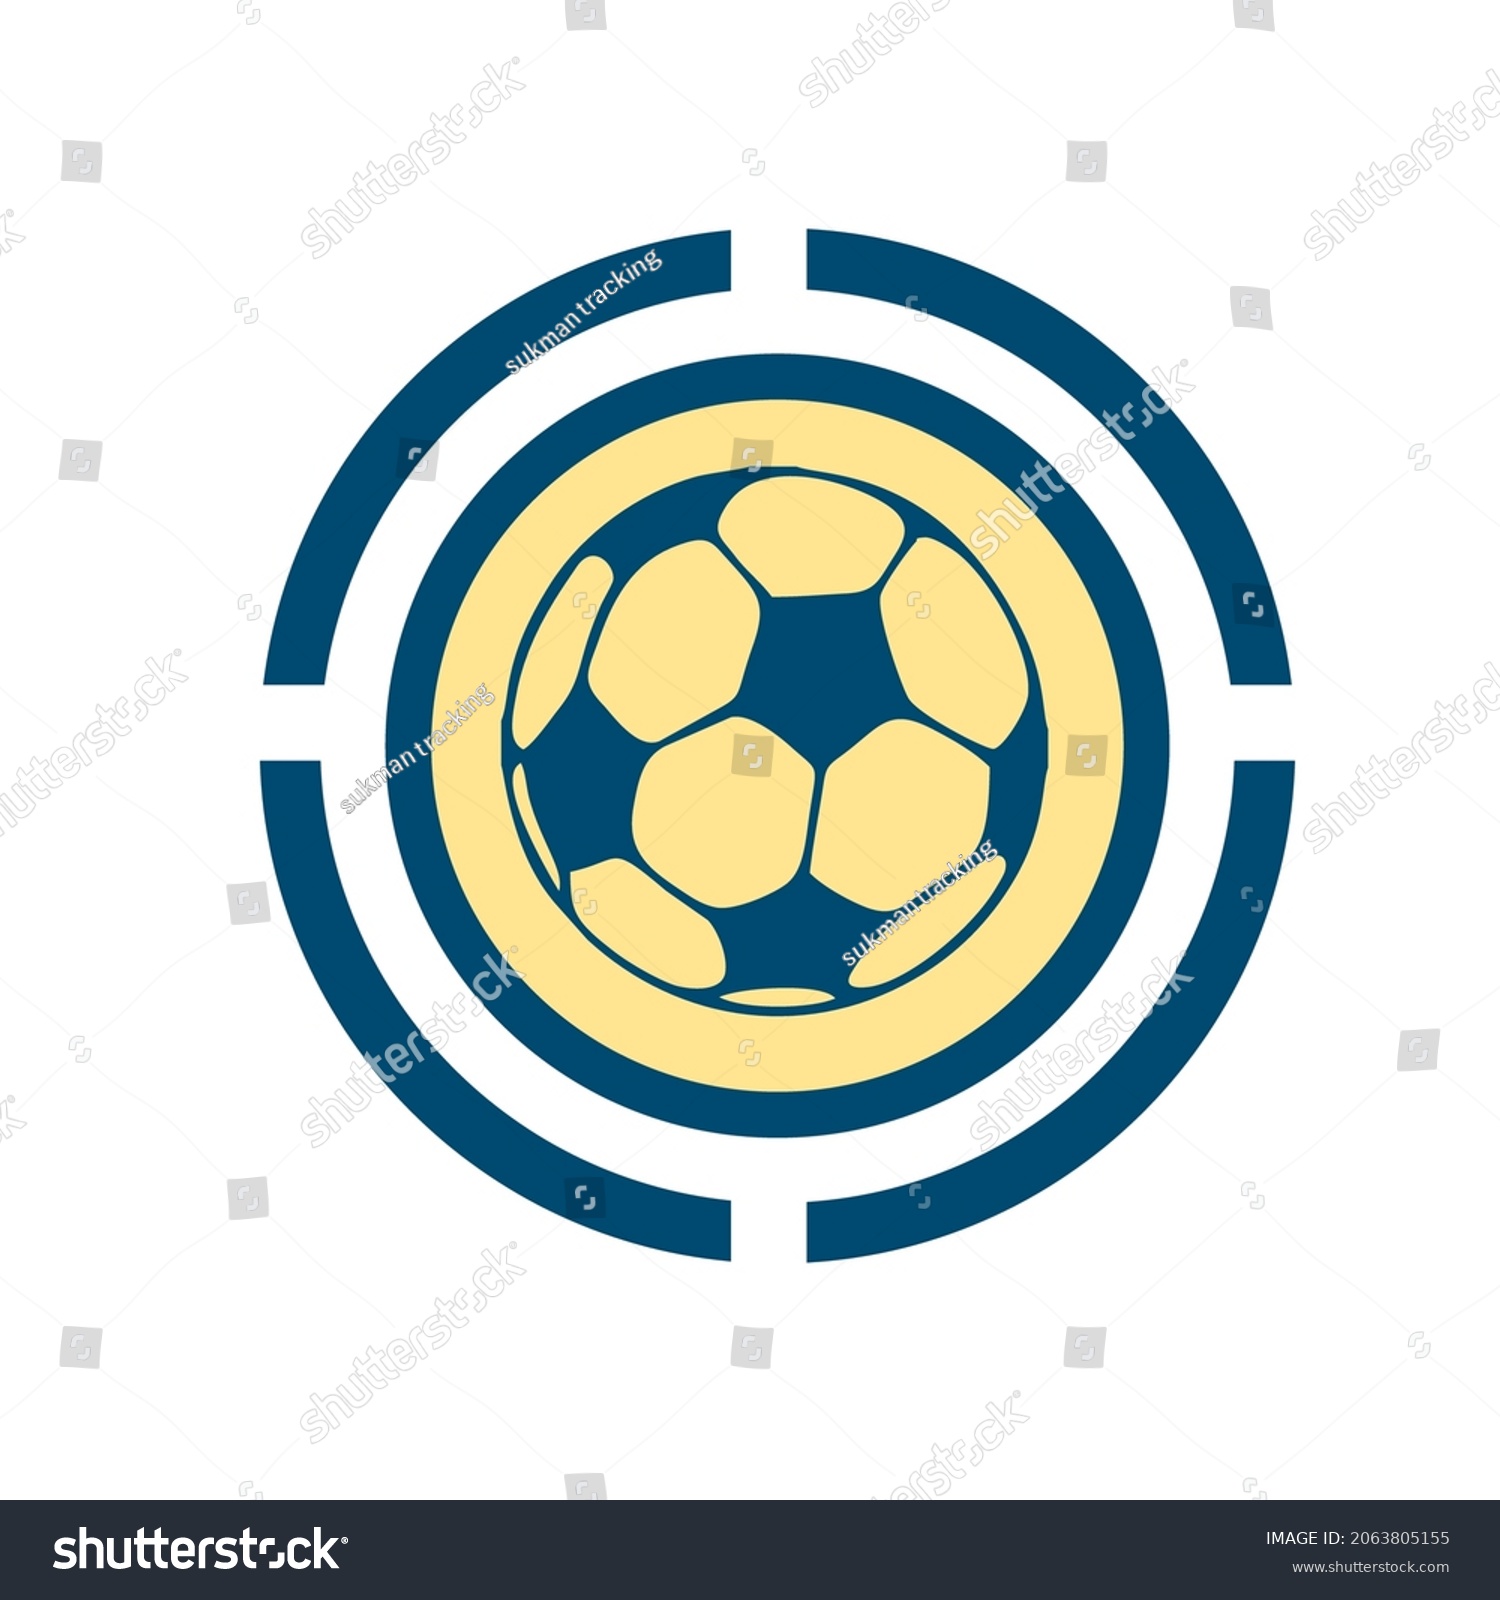 SVG of 
logo icon sepakbola, bisa di jadikan sebagai bisnis atau bahan editan olahraga
football icon logo, can be used as a business or sports editing material svg